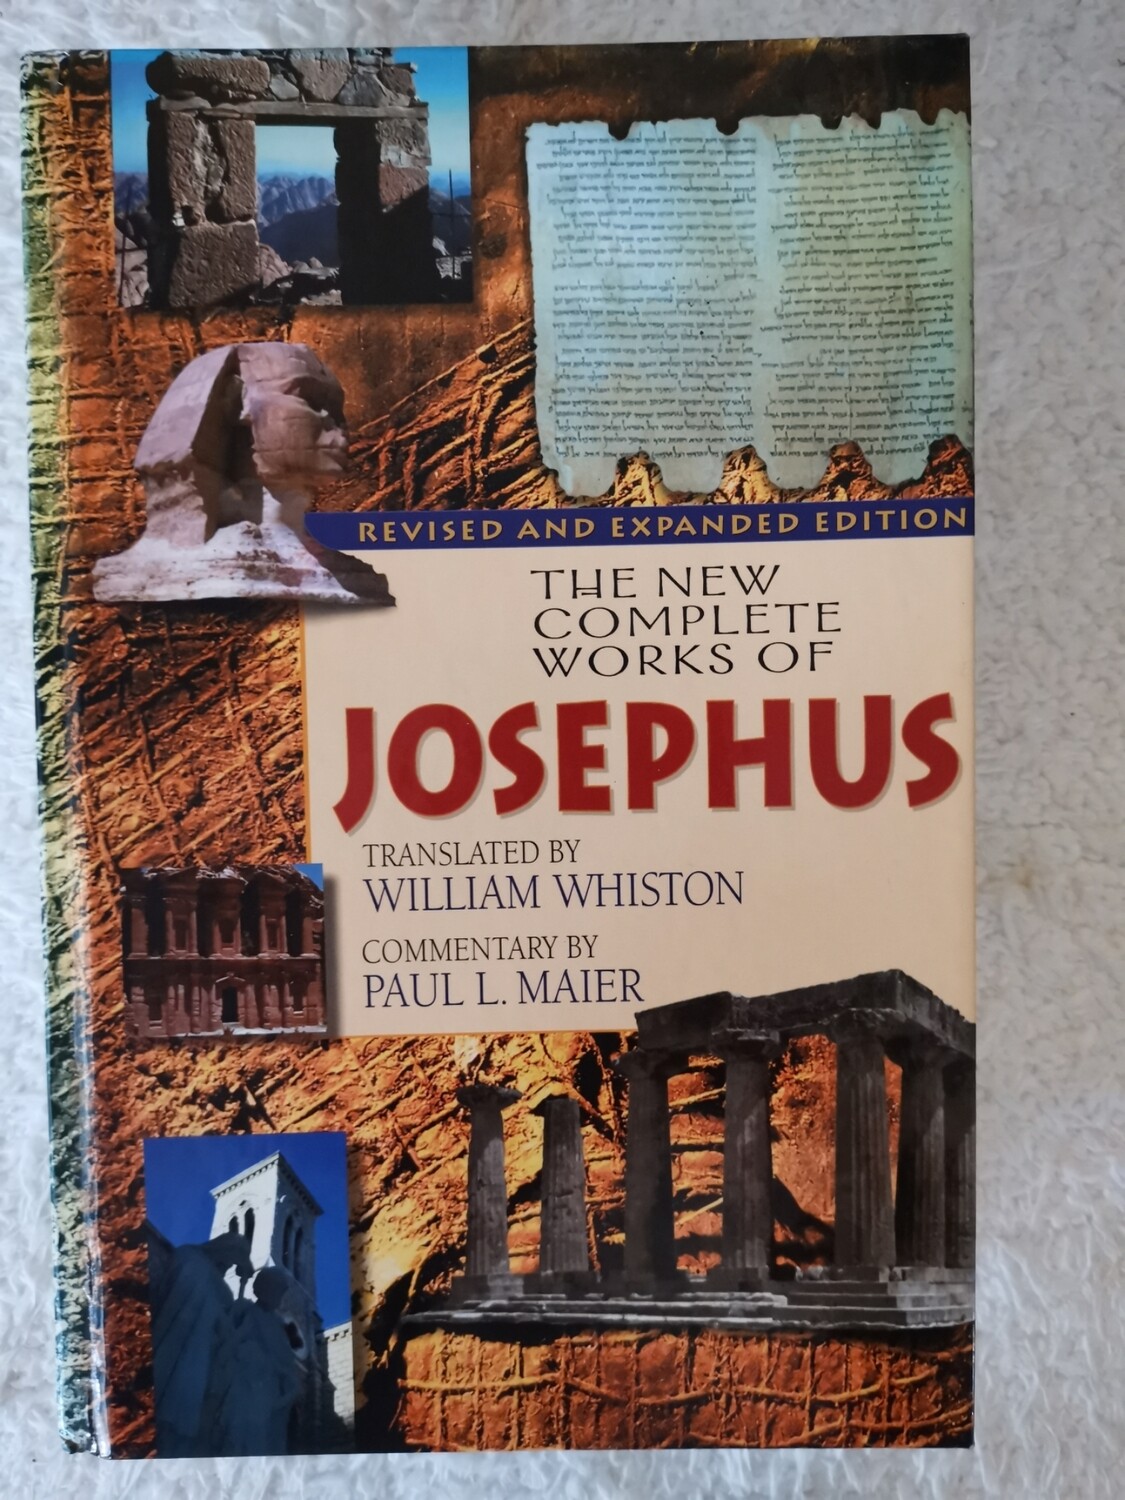 The complete works of Josephus